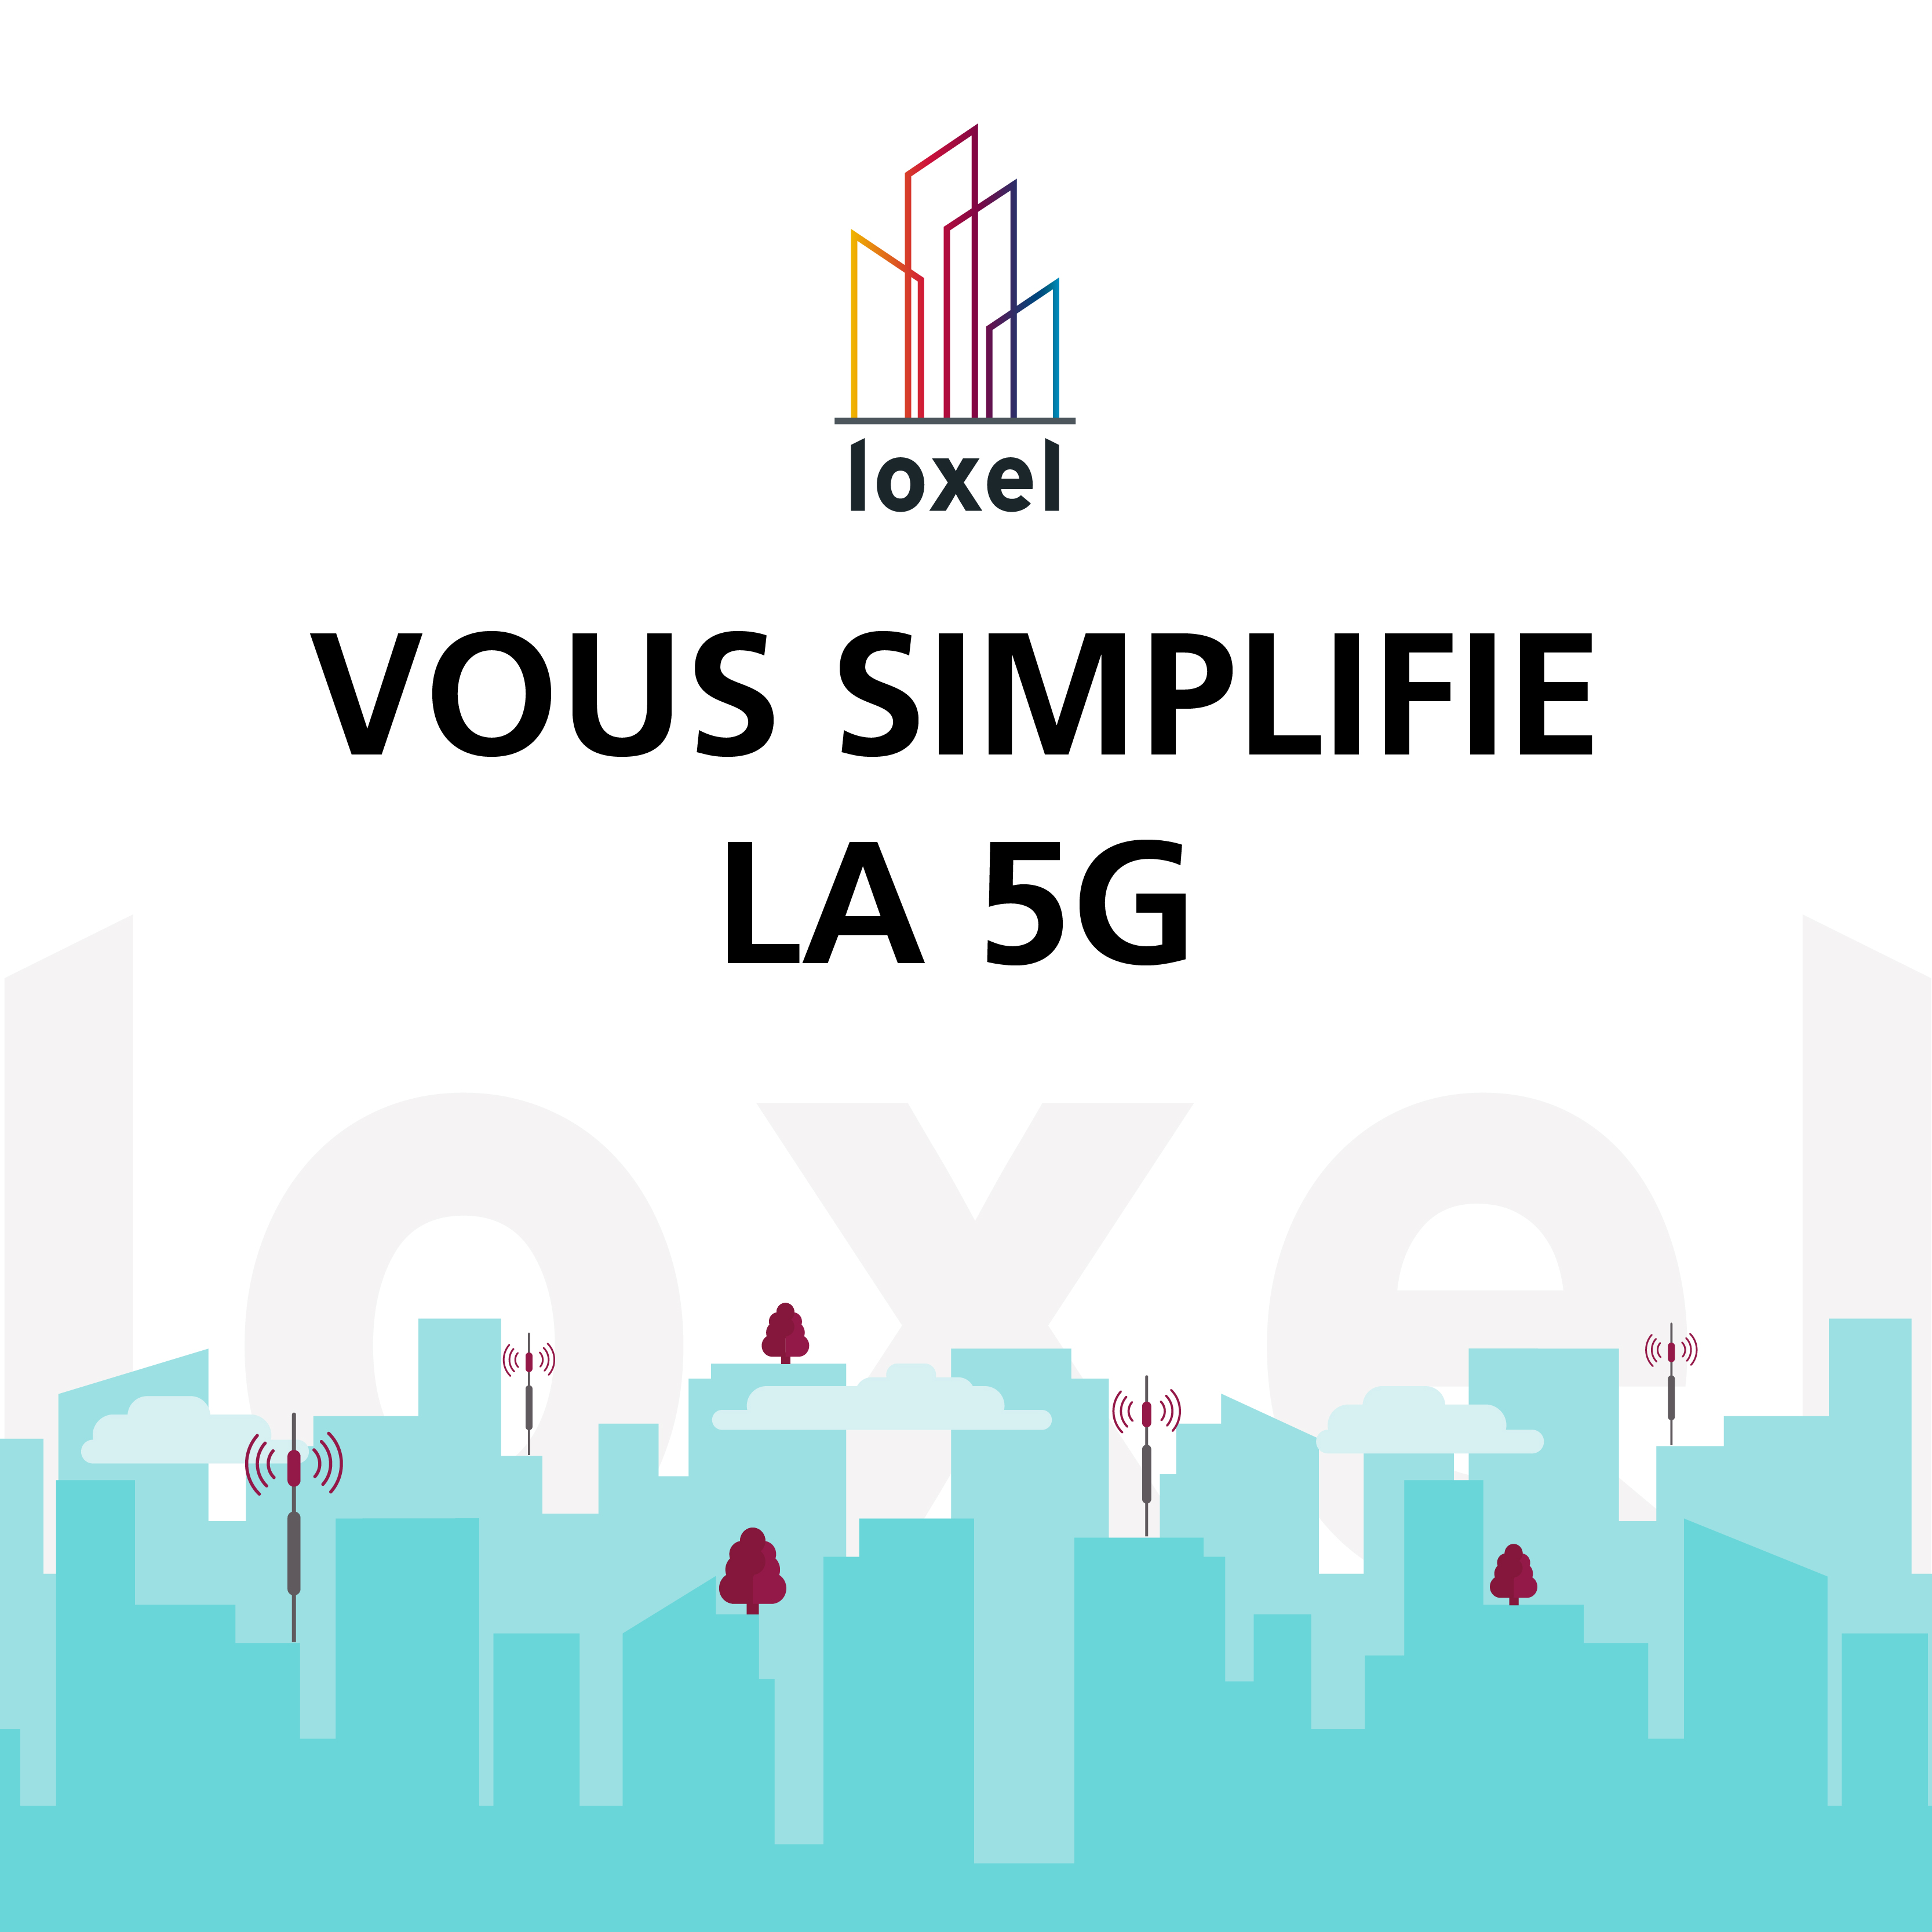 Loxel vous simplifie la 5G